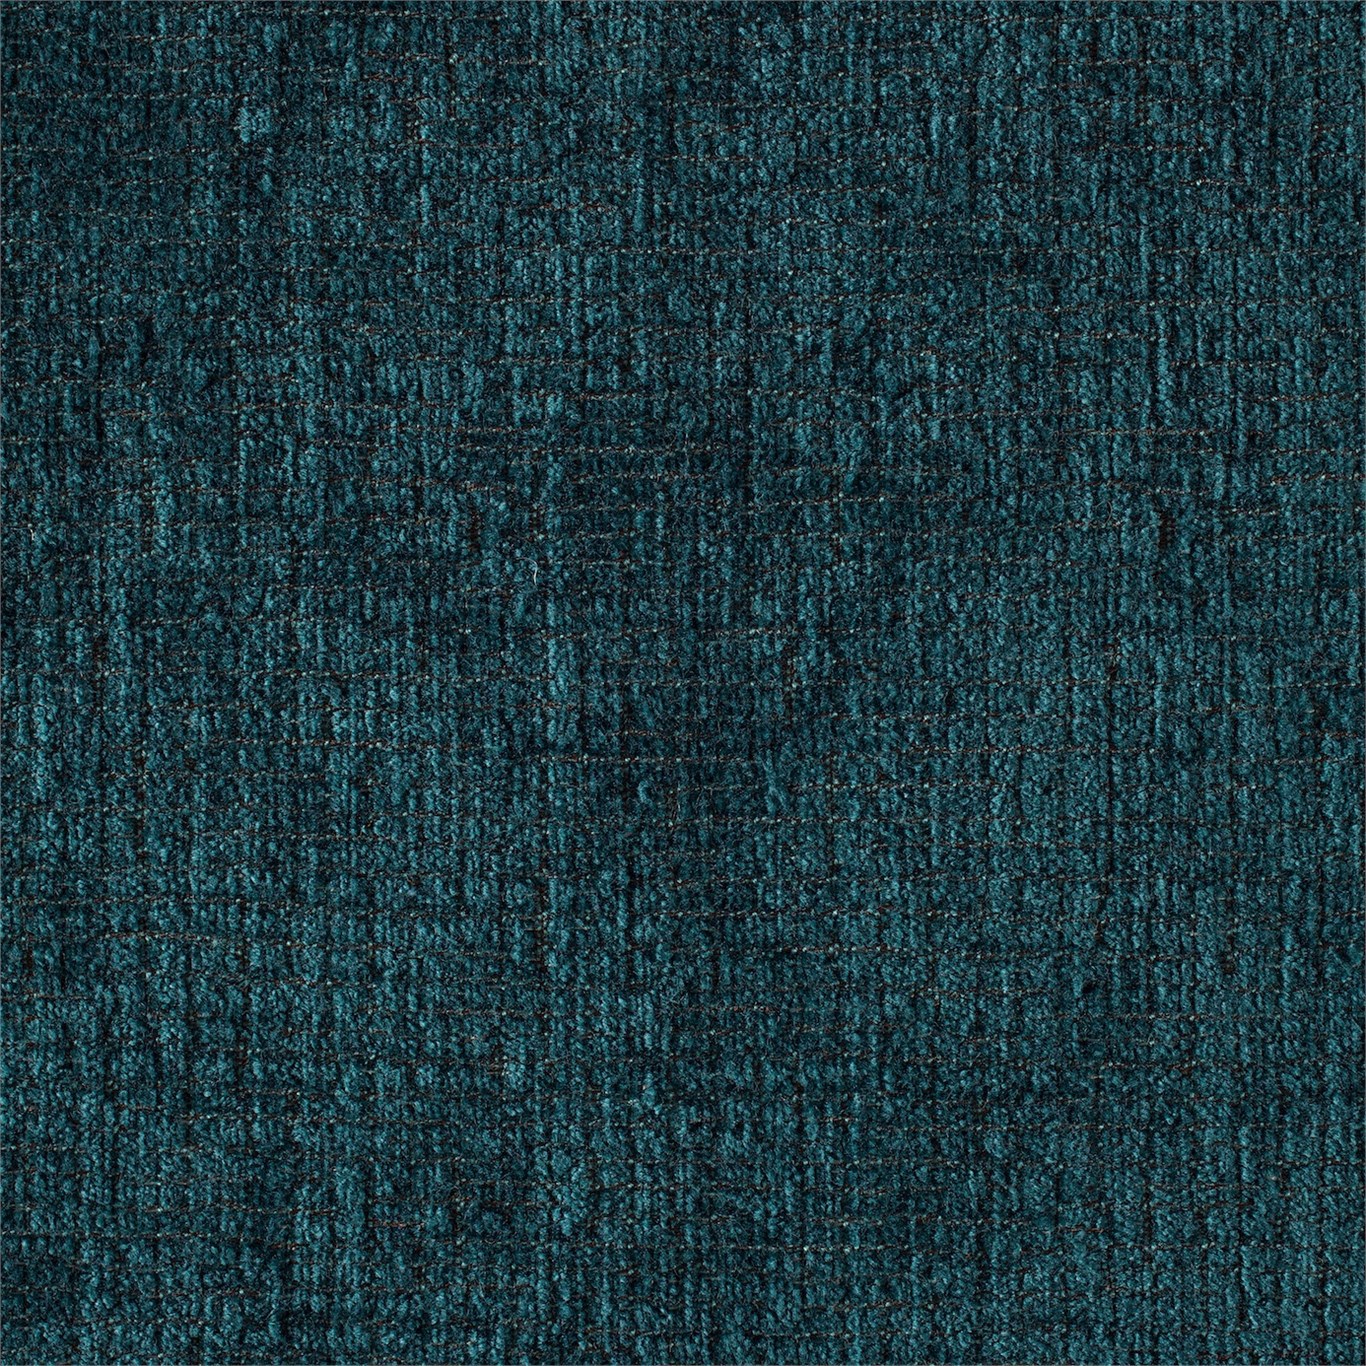 Tessella Teal Fabric by SAN